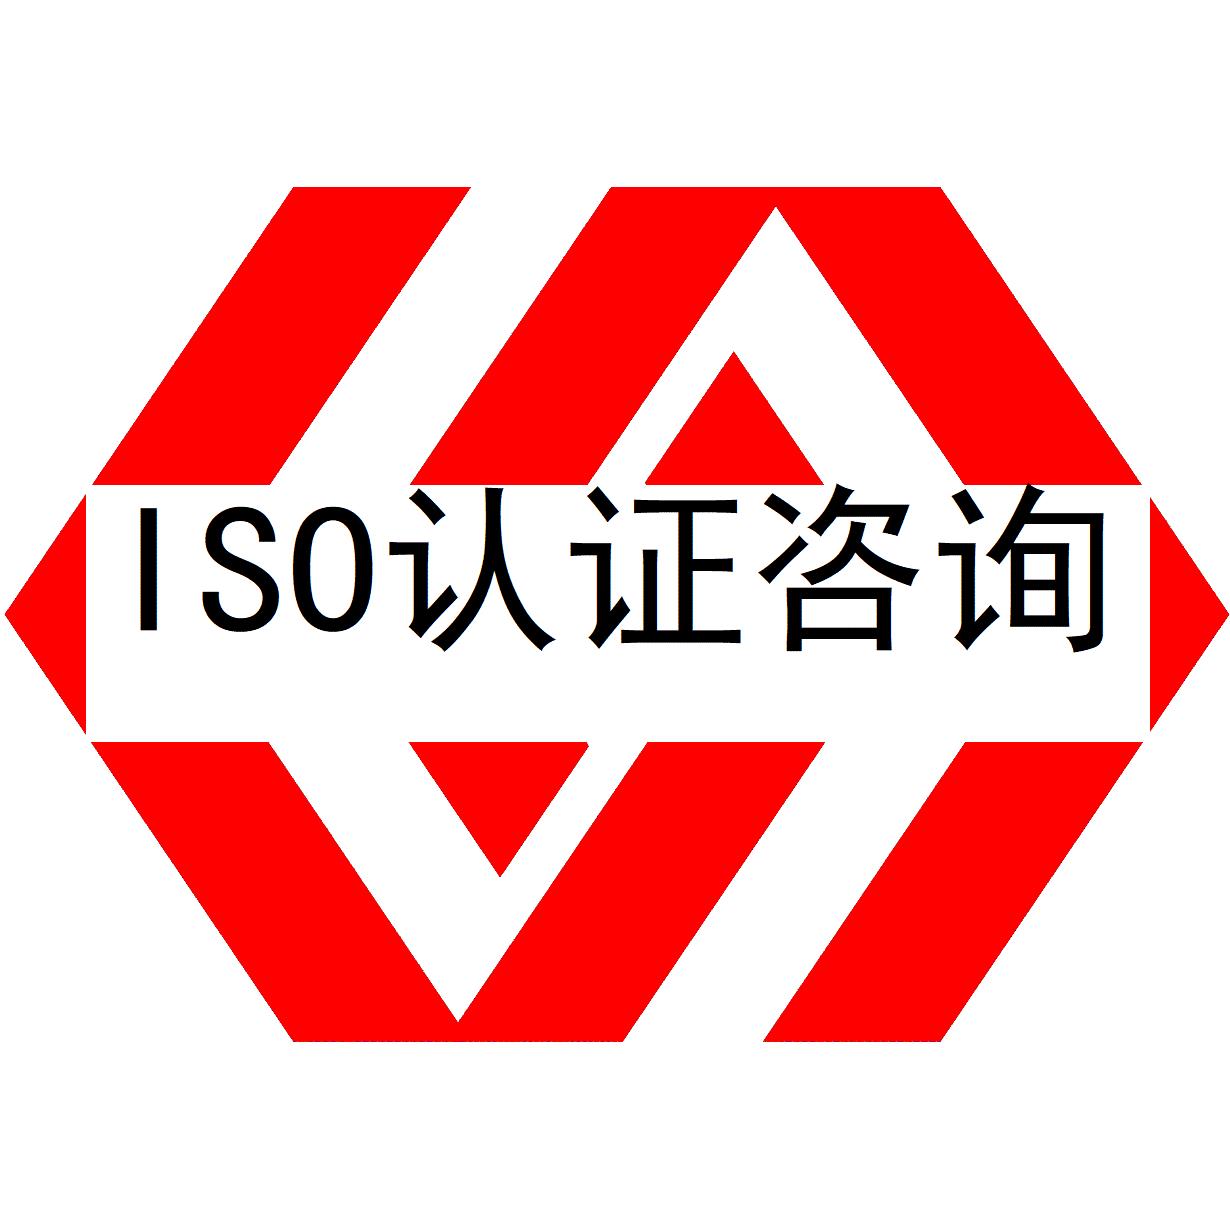 iso9001认证费用多少钱又该如何节省iso9001质量管理体系认证办理费用